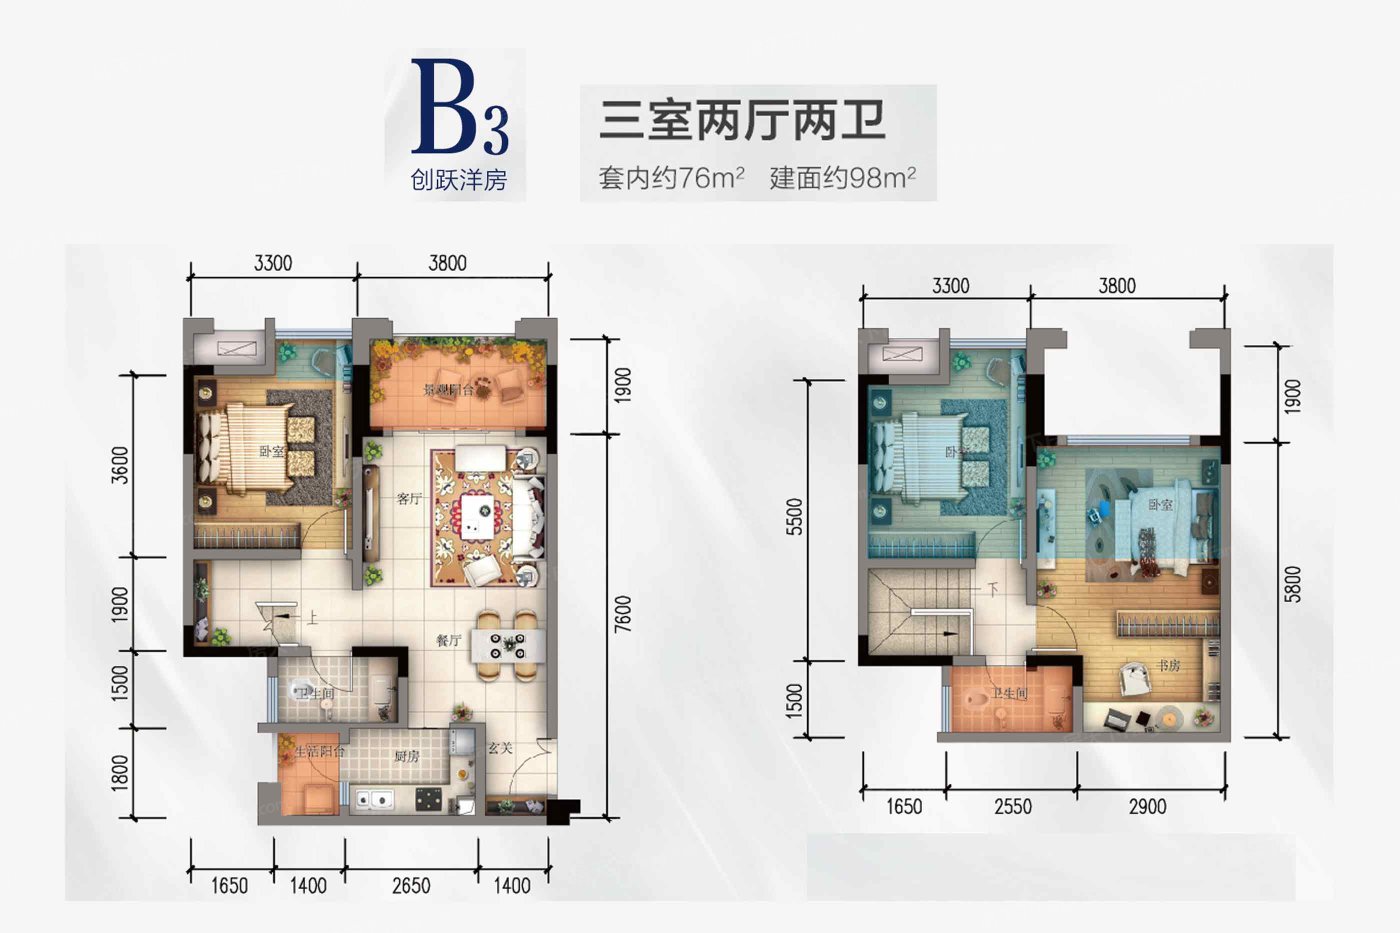 重庆市璧山区 中瓯璧河名都2室2厅1卫 132m²-v2户型图 - 小区户型图 -躺平设计家